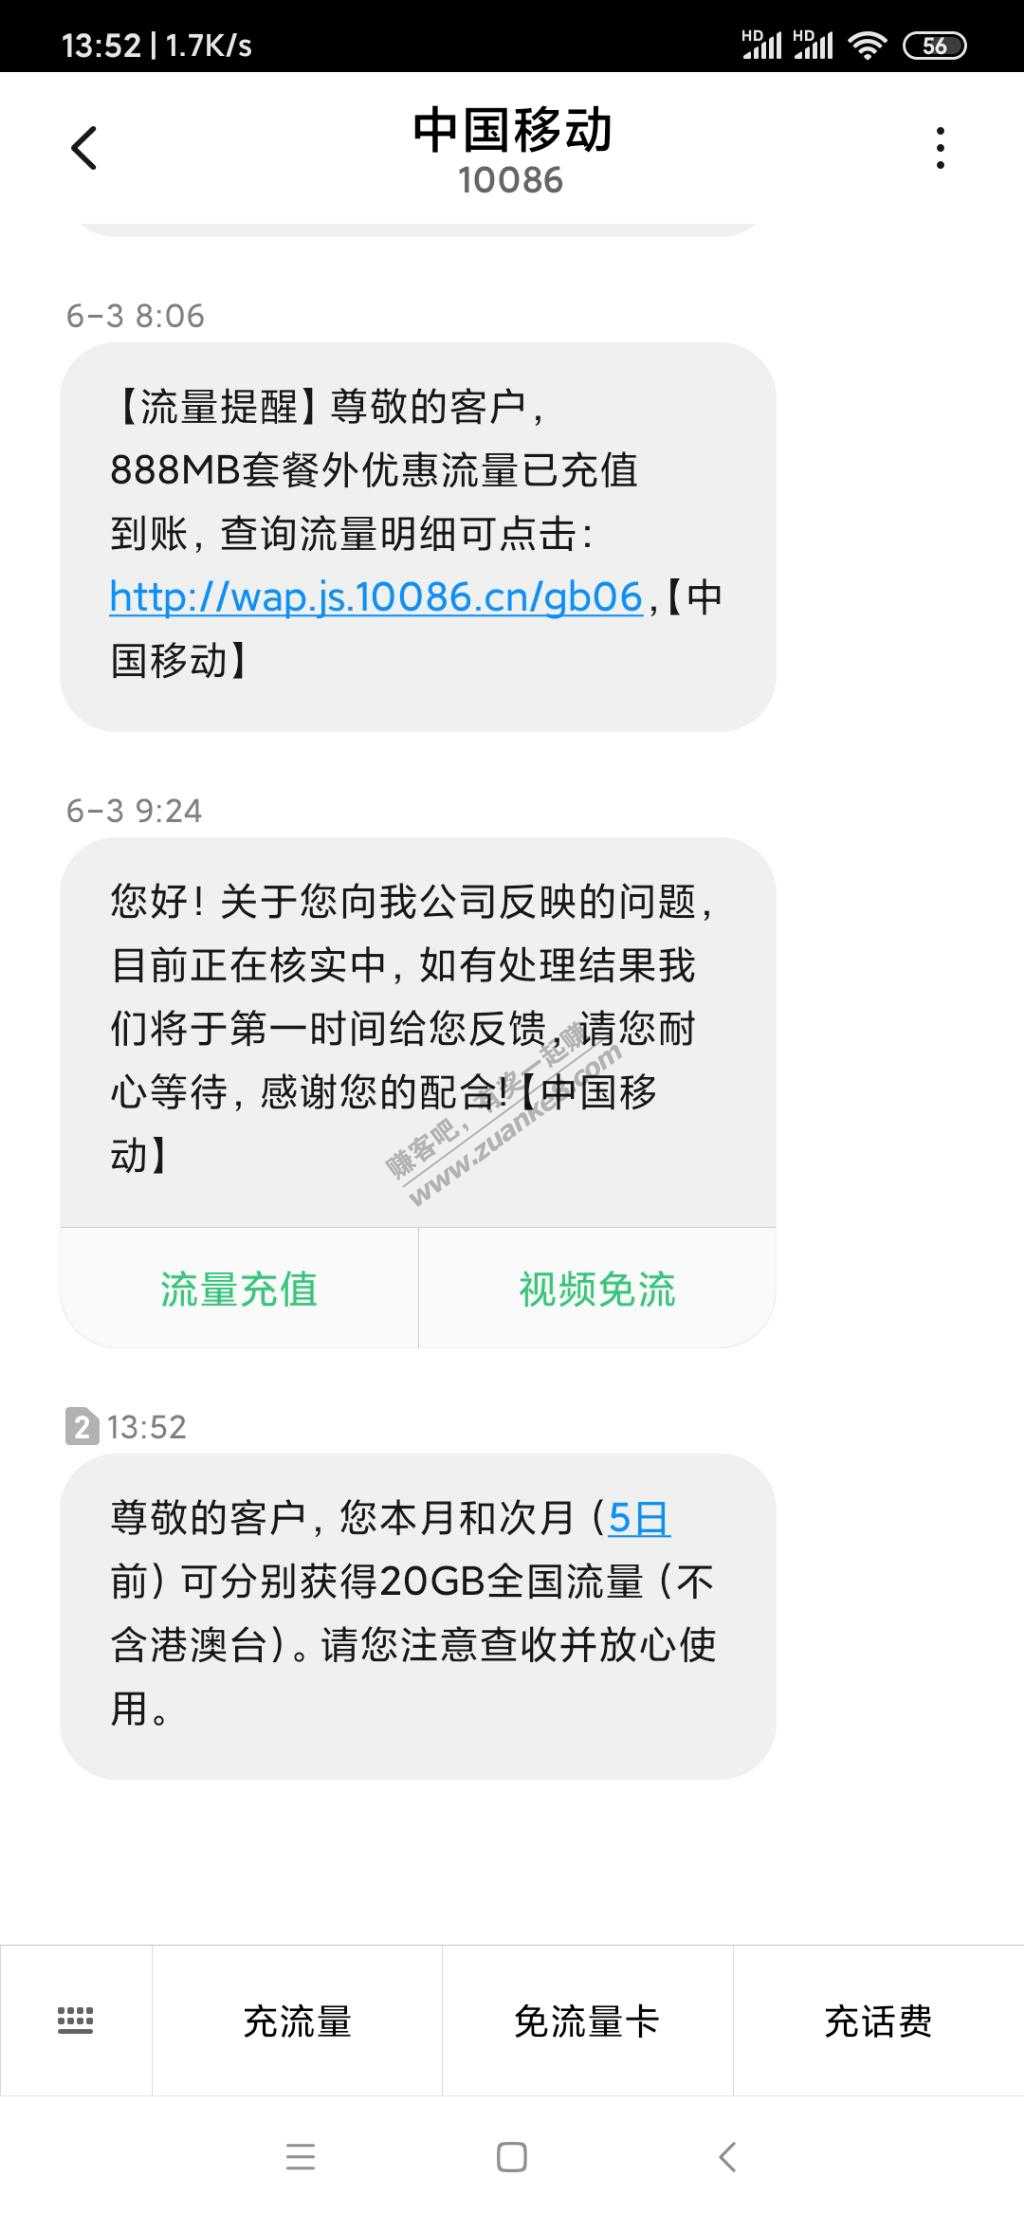 苏州移动幸运用户40G流量-惠小助(52huixz.com)